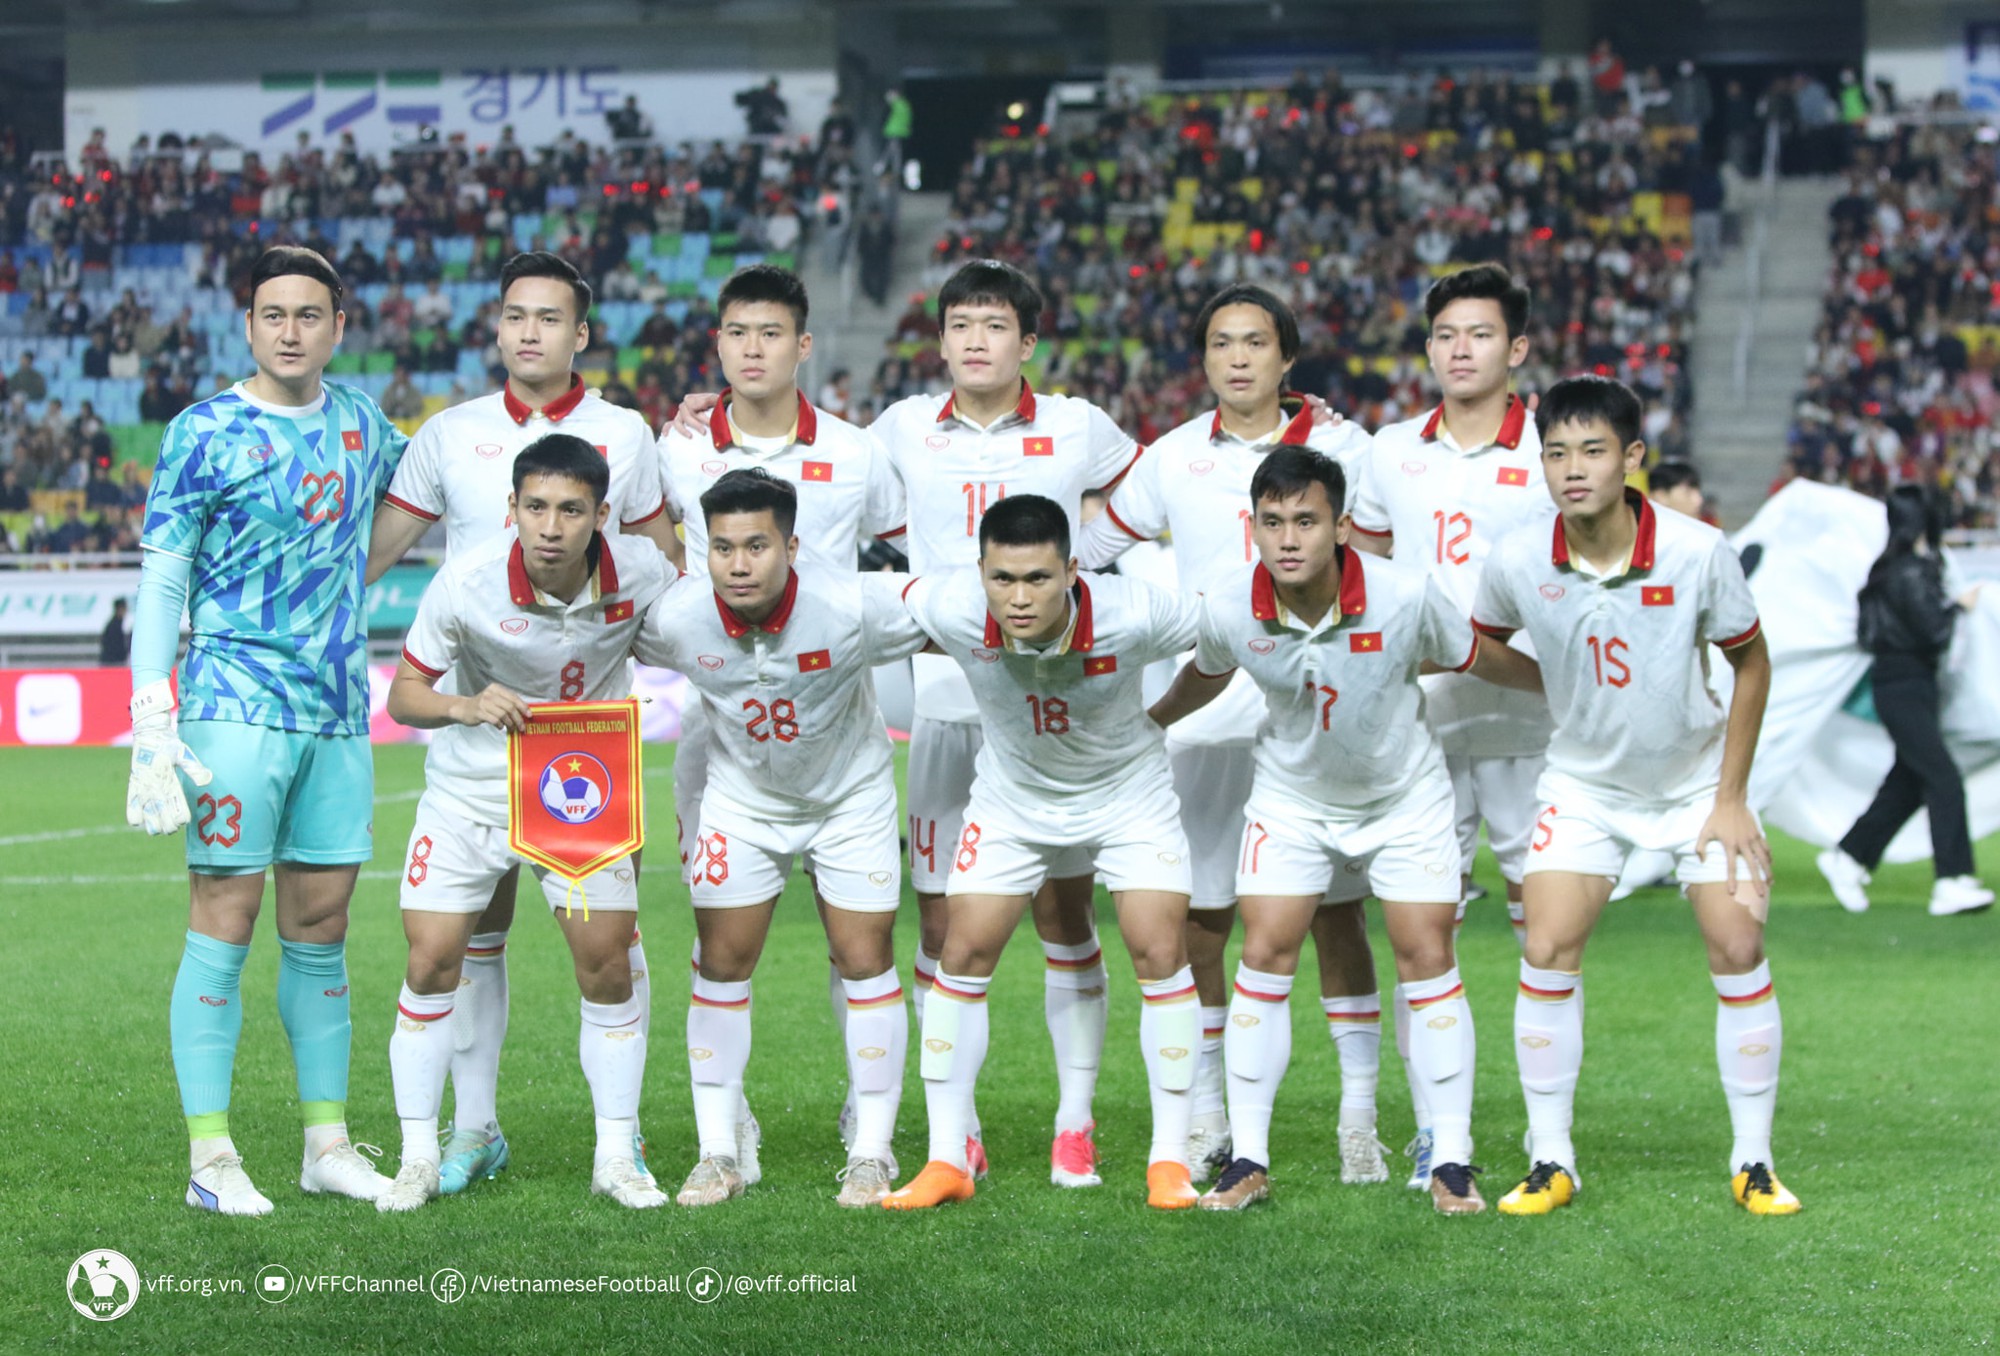 Vòng loại World Cup 2026: Đội tuyển Việt Nam gặp thách thức lớn - Ảnh 2.